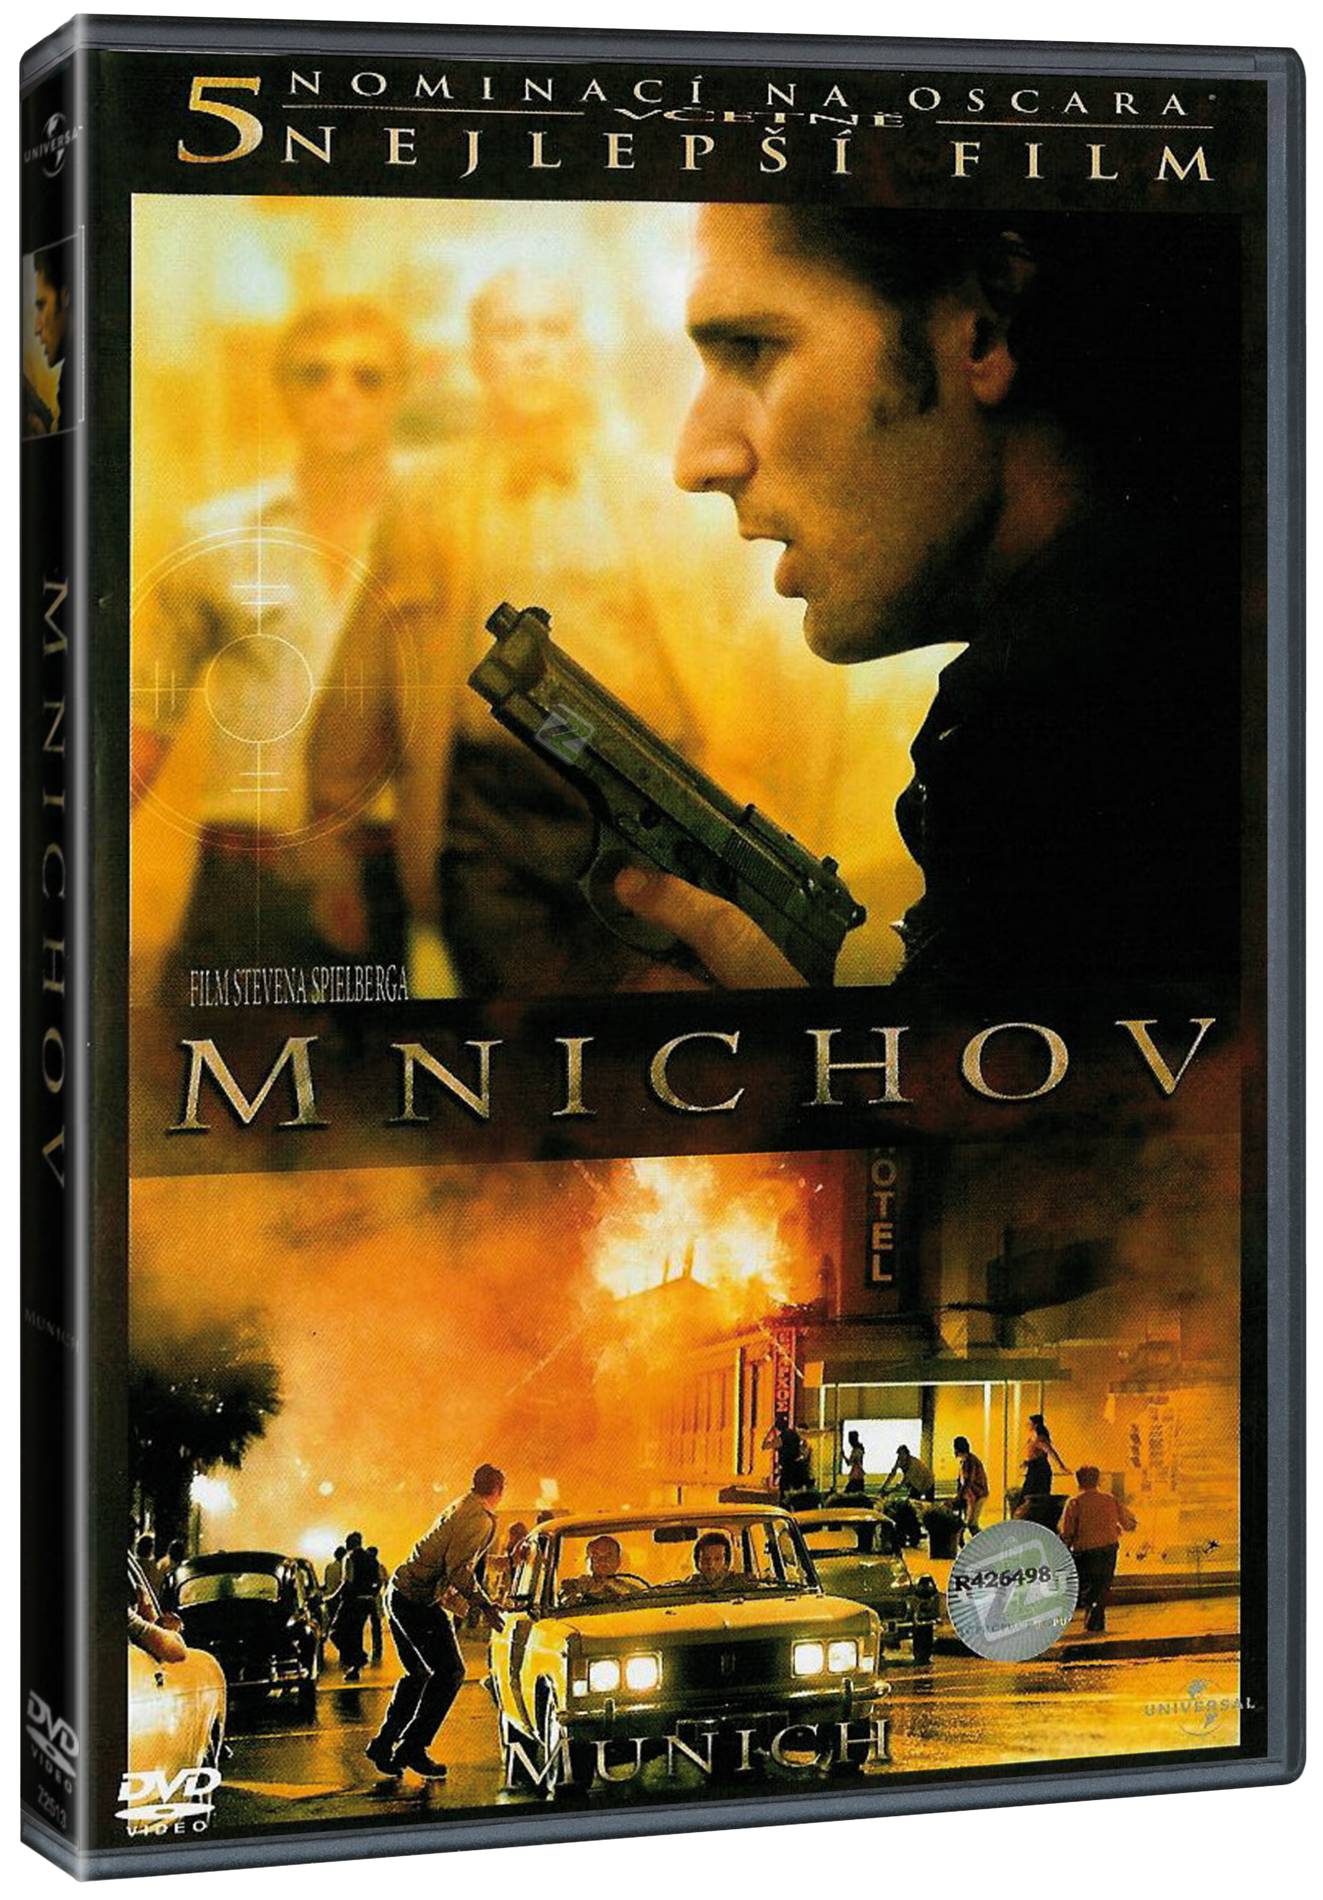 Mnichov - DVD